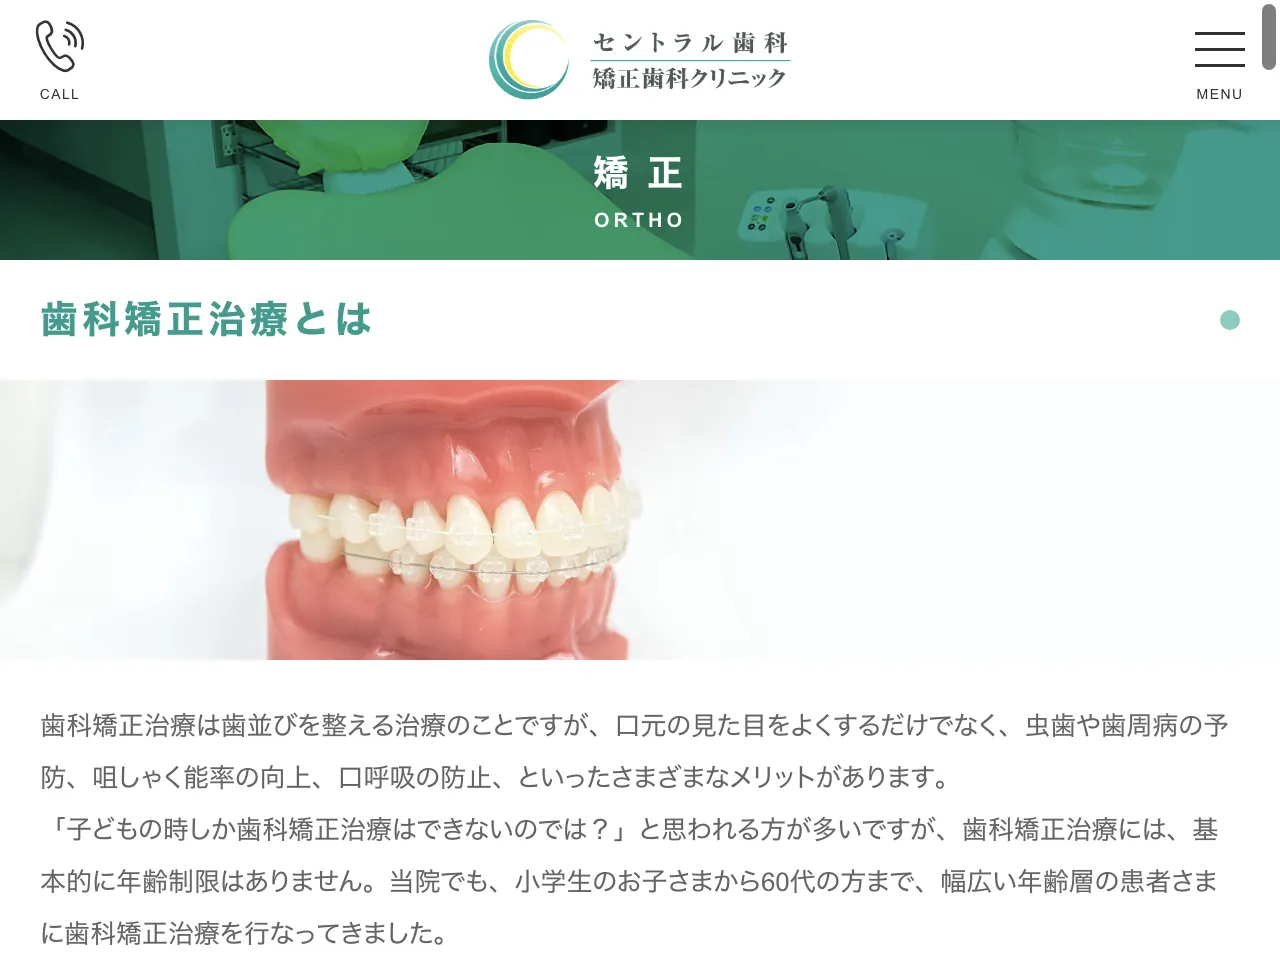 セントラル歯科 矯正歯科クリニックのウェブサイト